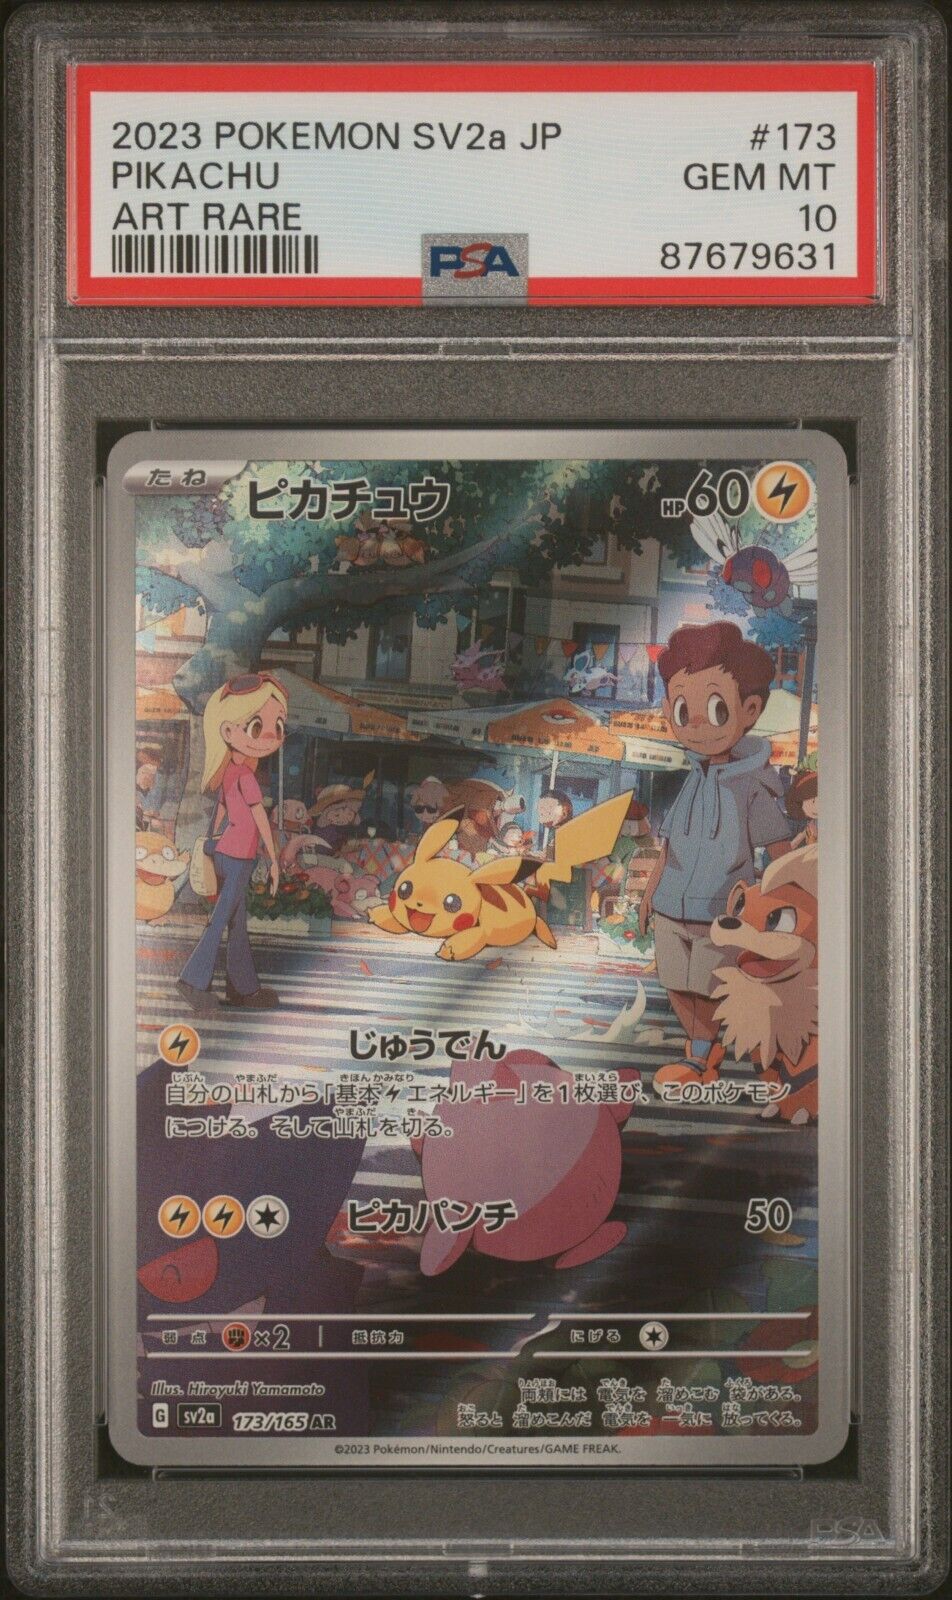 2023 Pokemon 151 Japanese sv2a AR Pikachu #173/165 GEM MINT PSA 10